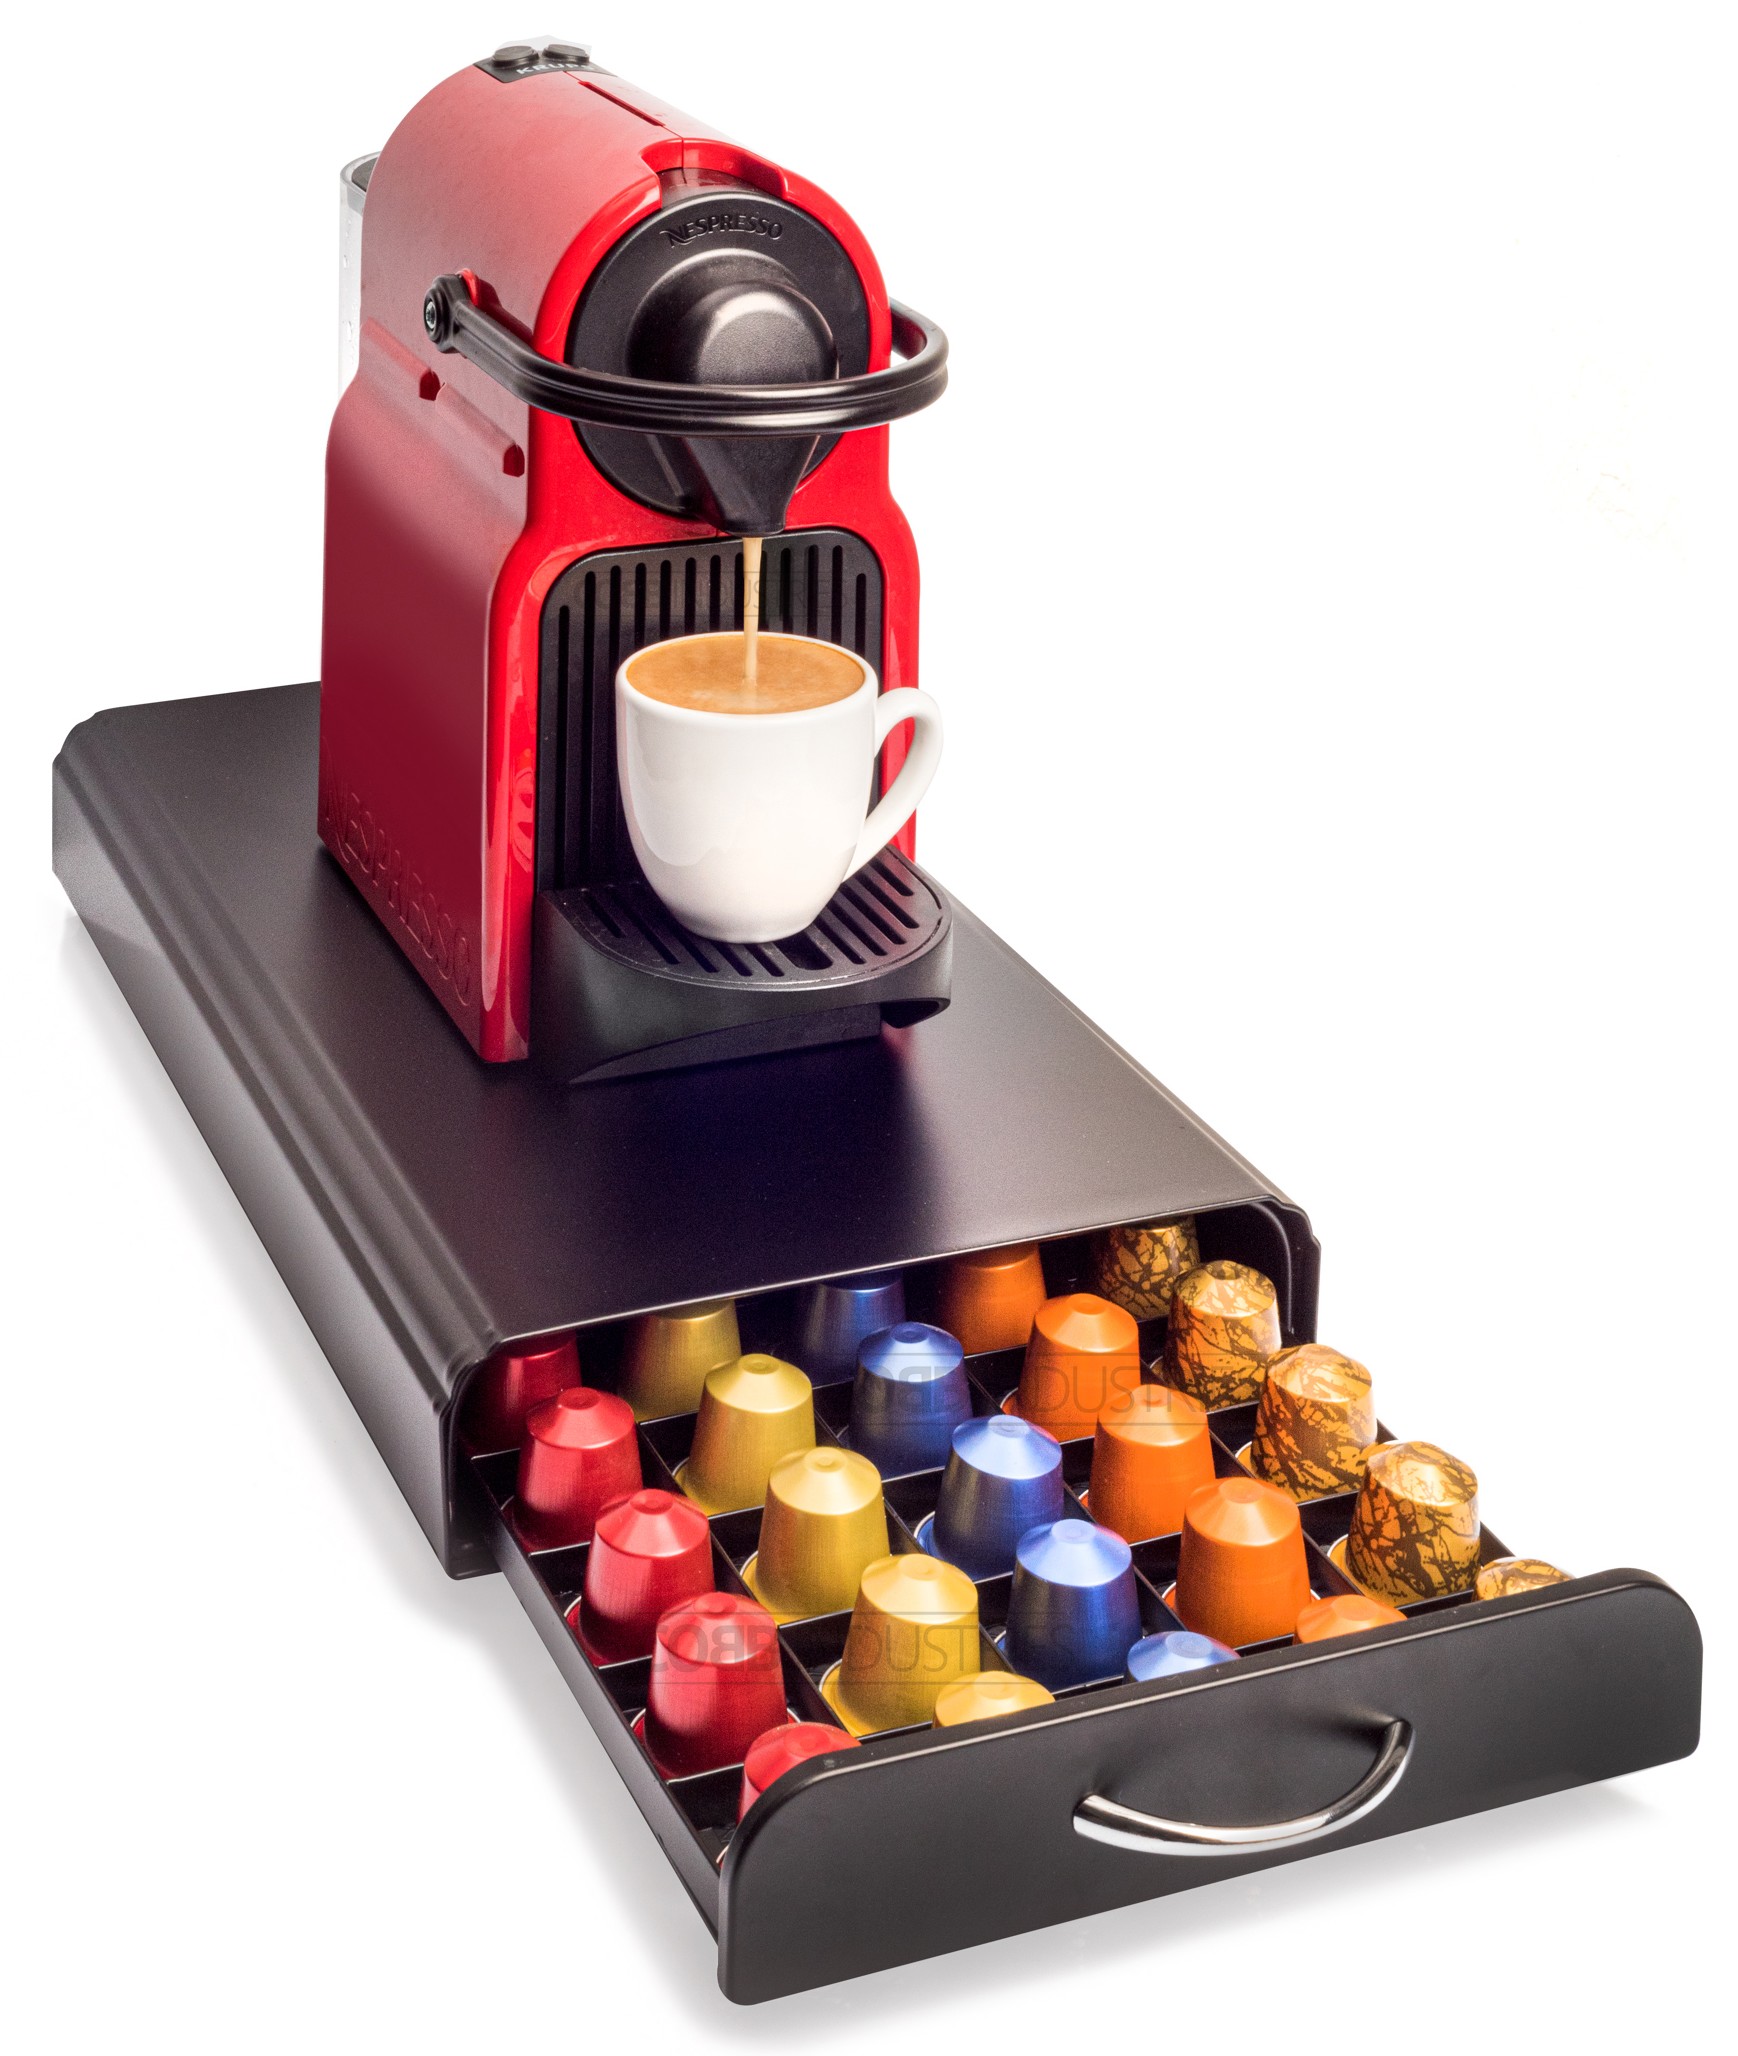 Distributeur Dolce gusto - Tiroir pour ranger les capsules de café